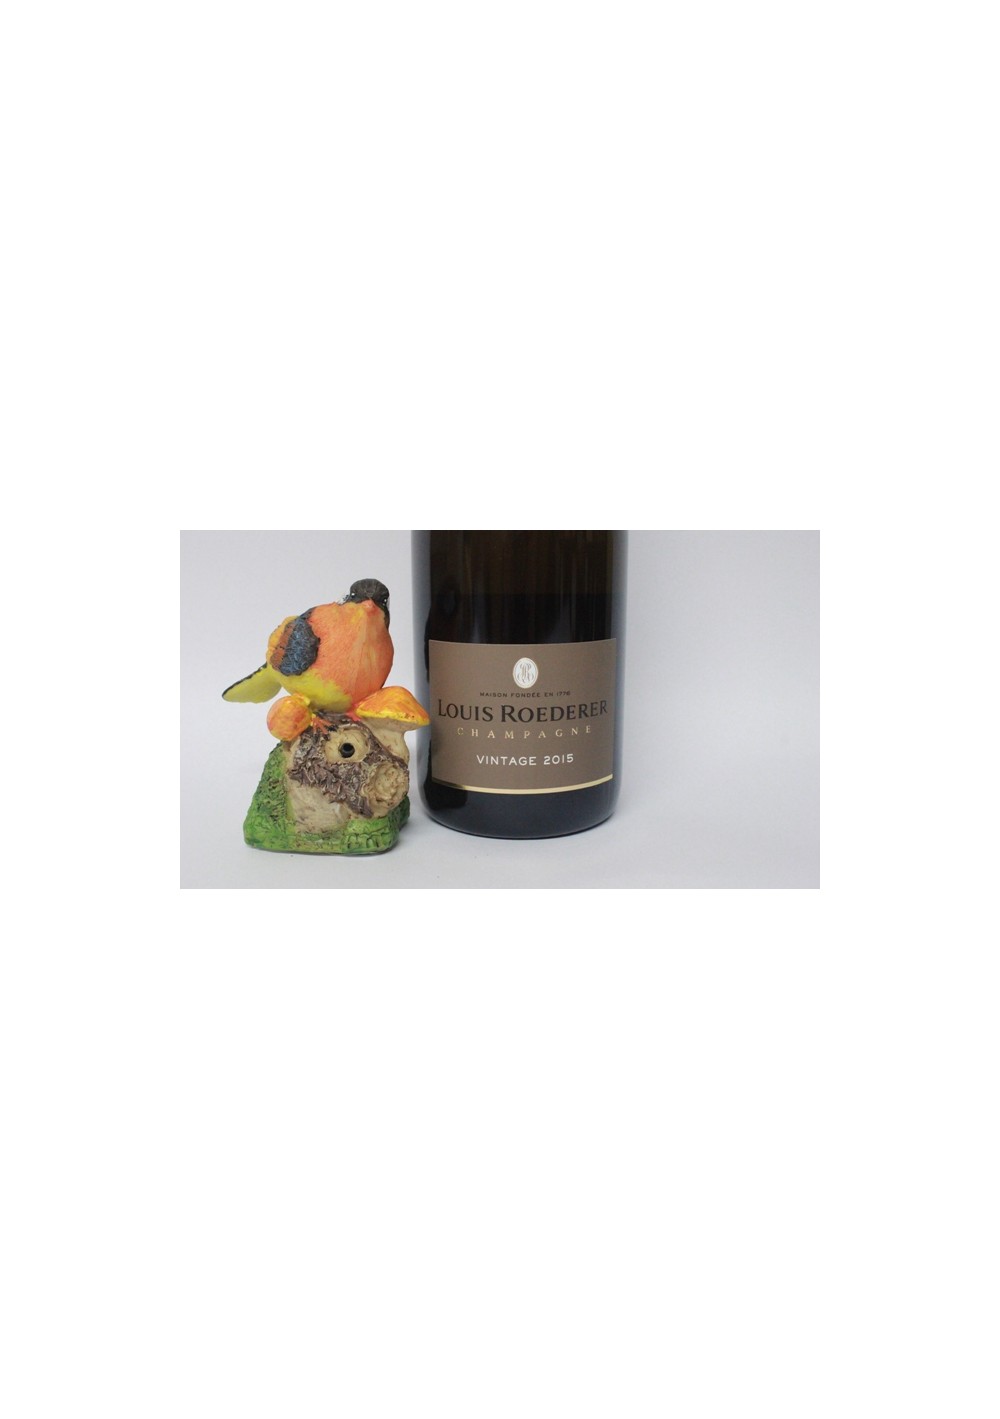 Champagne Louis Roederer Brut vintage 2015